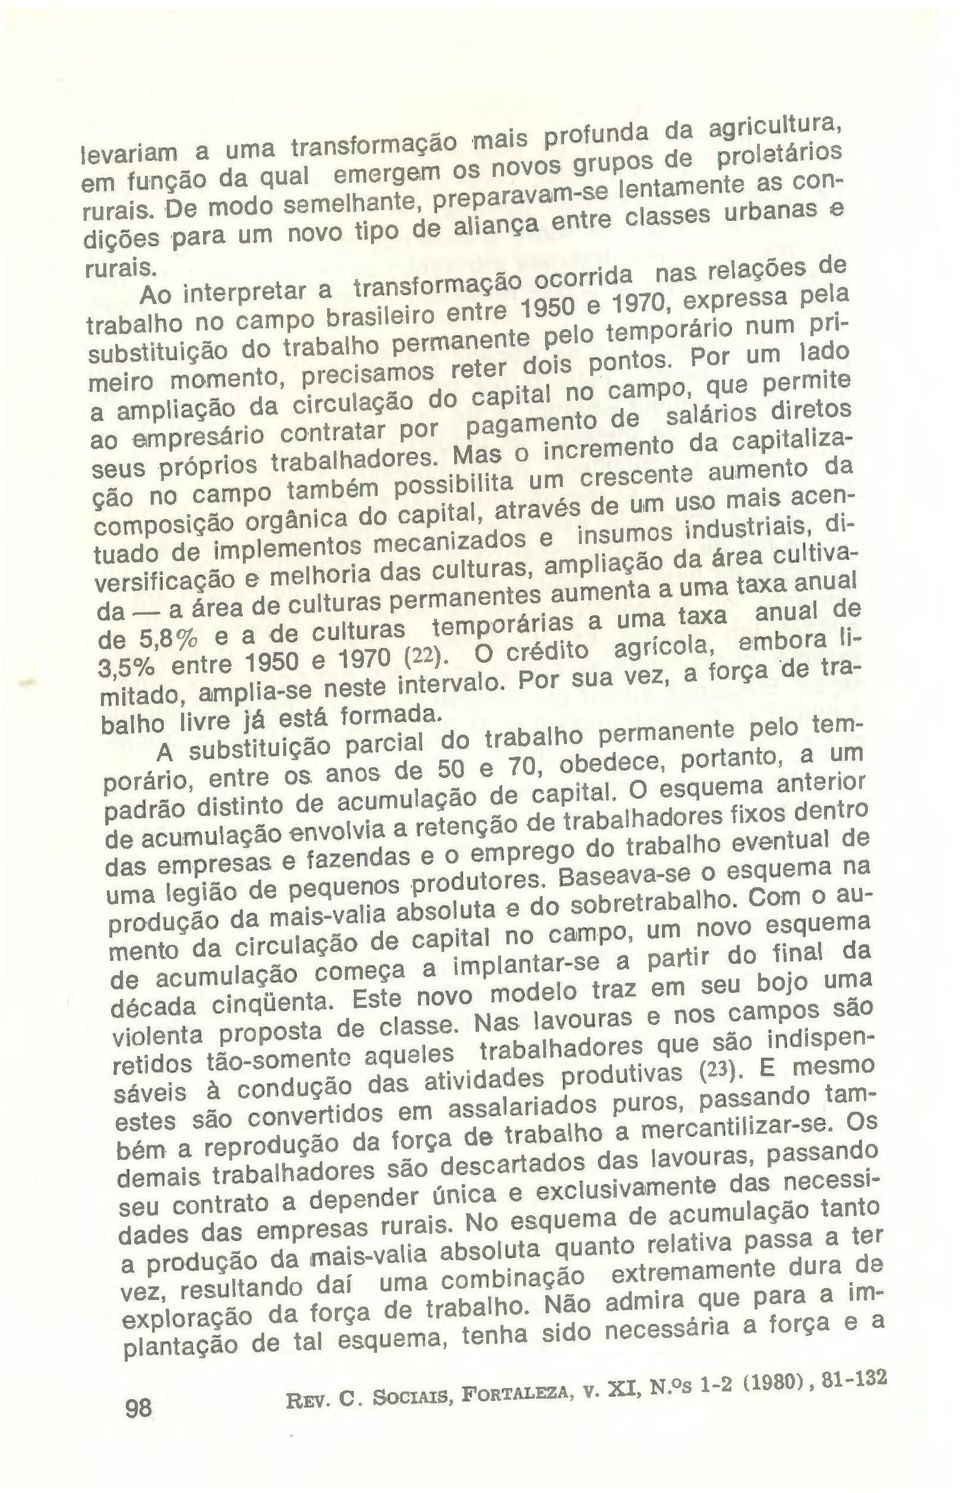 relações de trabalho no campo brasileiro entre 1950 e 1970, expressa pela substituição do trabalho permanente pelo temporário num primeiro momento, precisamos reter dois pontos.